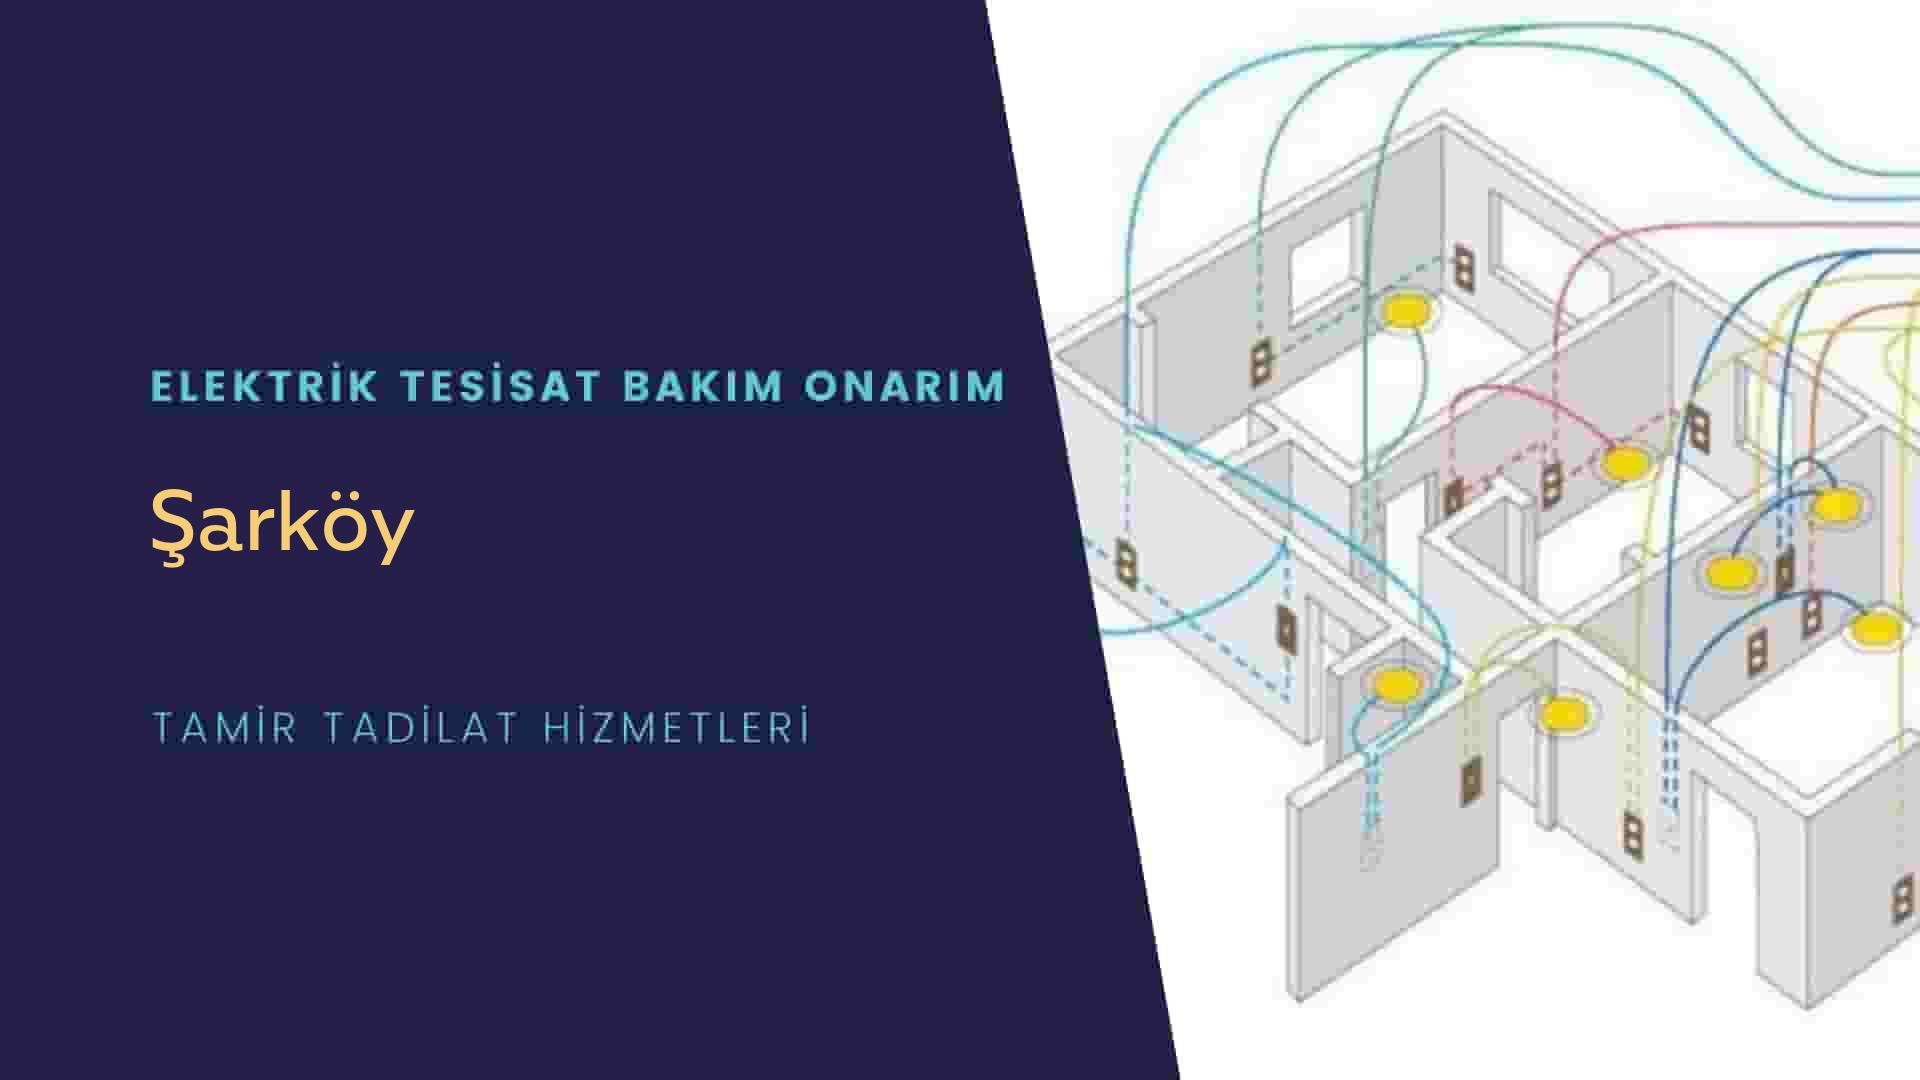 Şarköy'de elektrik tesisatı ustalarımı arıyorsunuz doğru adrestenizi Şarköy elektrik tesisatı ustalarımız 7/24 sizlere hizmet vermekten mutluluk duyar.